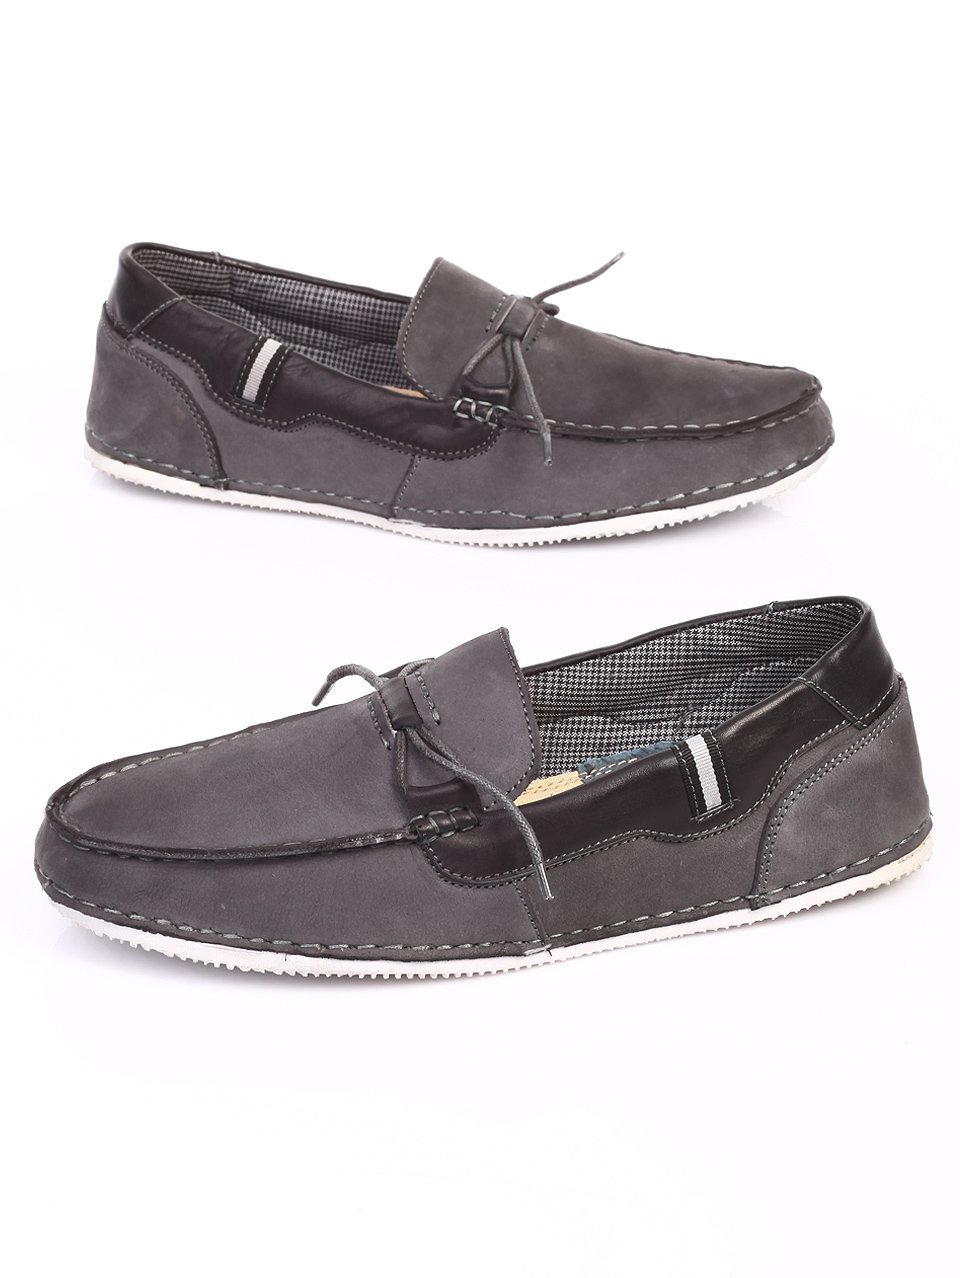 Mъжки обувки от естествен набук в сиво 7N-17393 grey